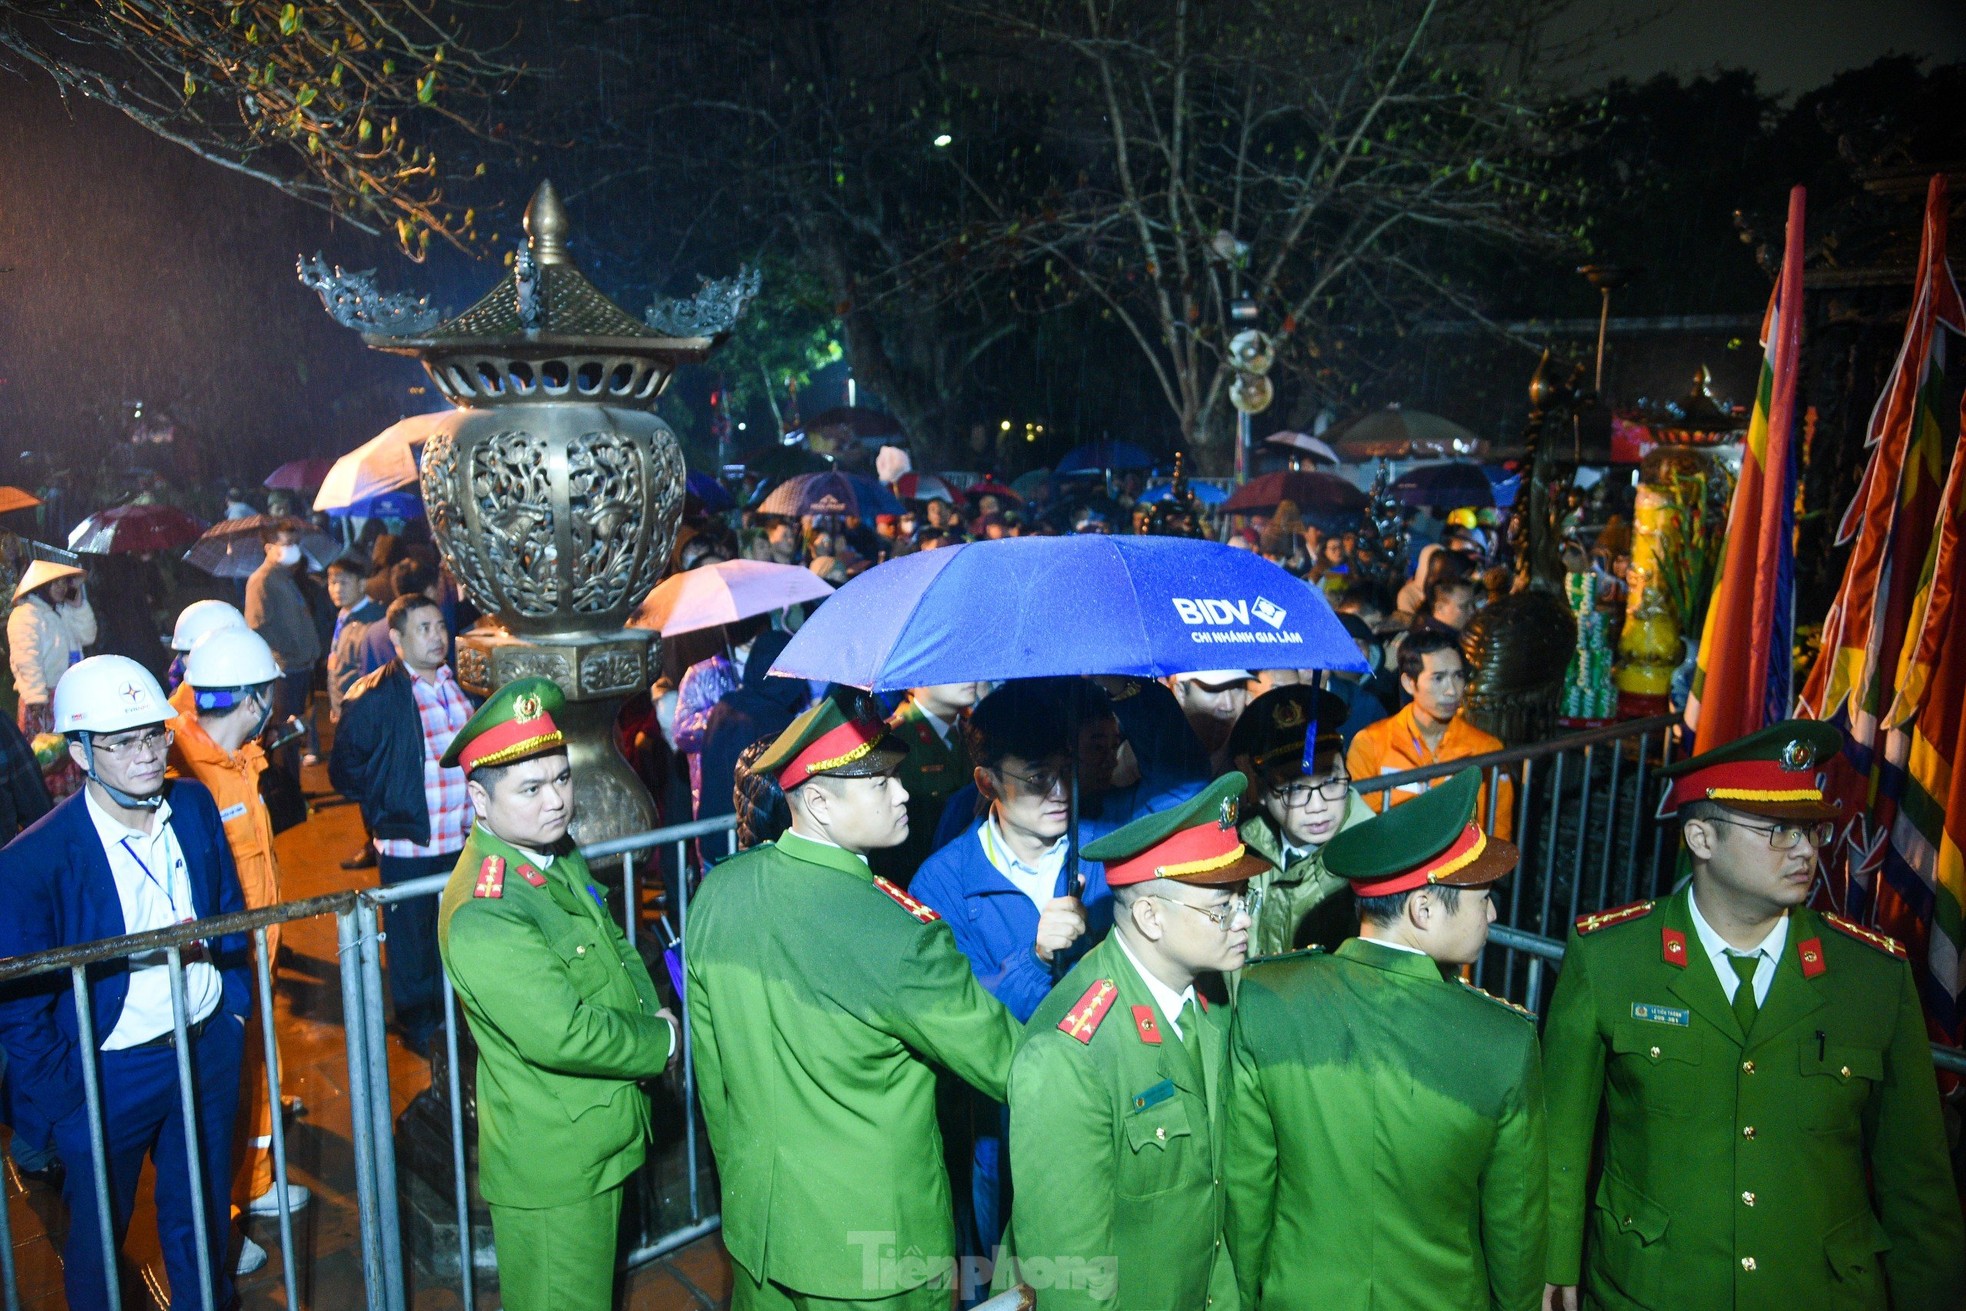 Dòng người đổ về dự khai ấn đền Trần dưới mưa lạnh, đặt 70 chốt an ninh - Ảnh 1.